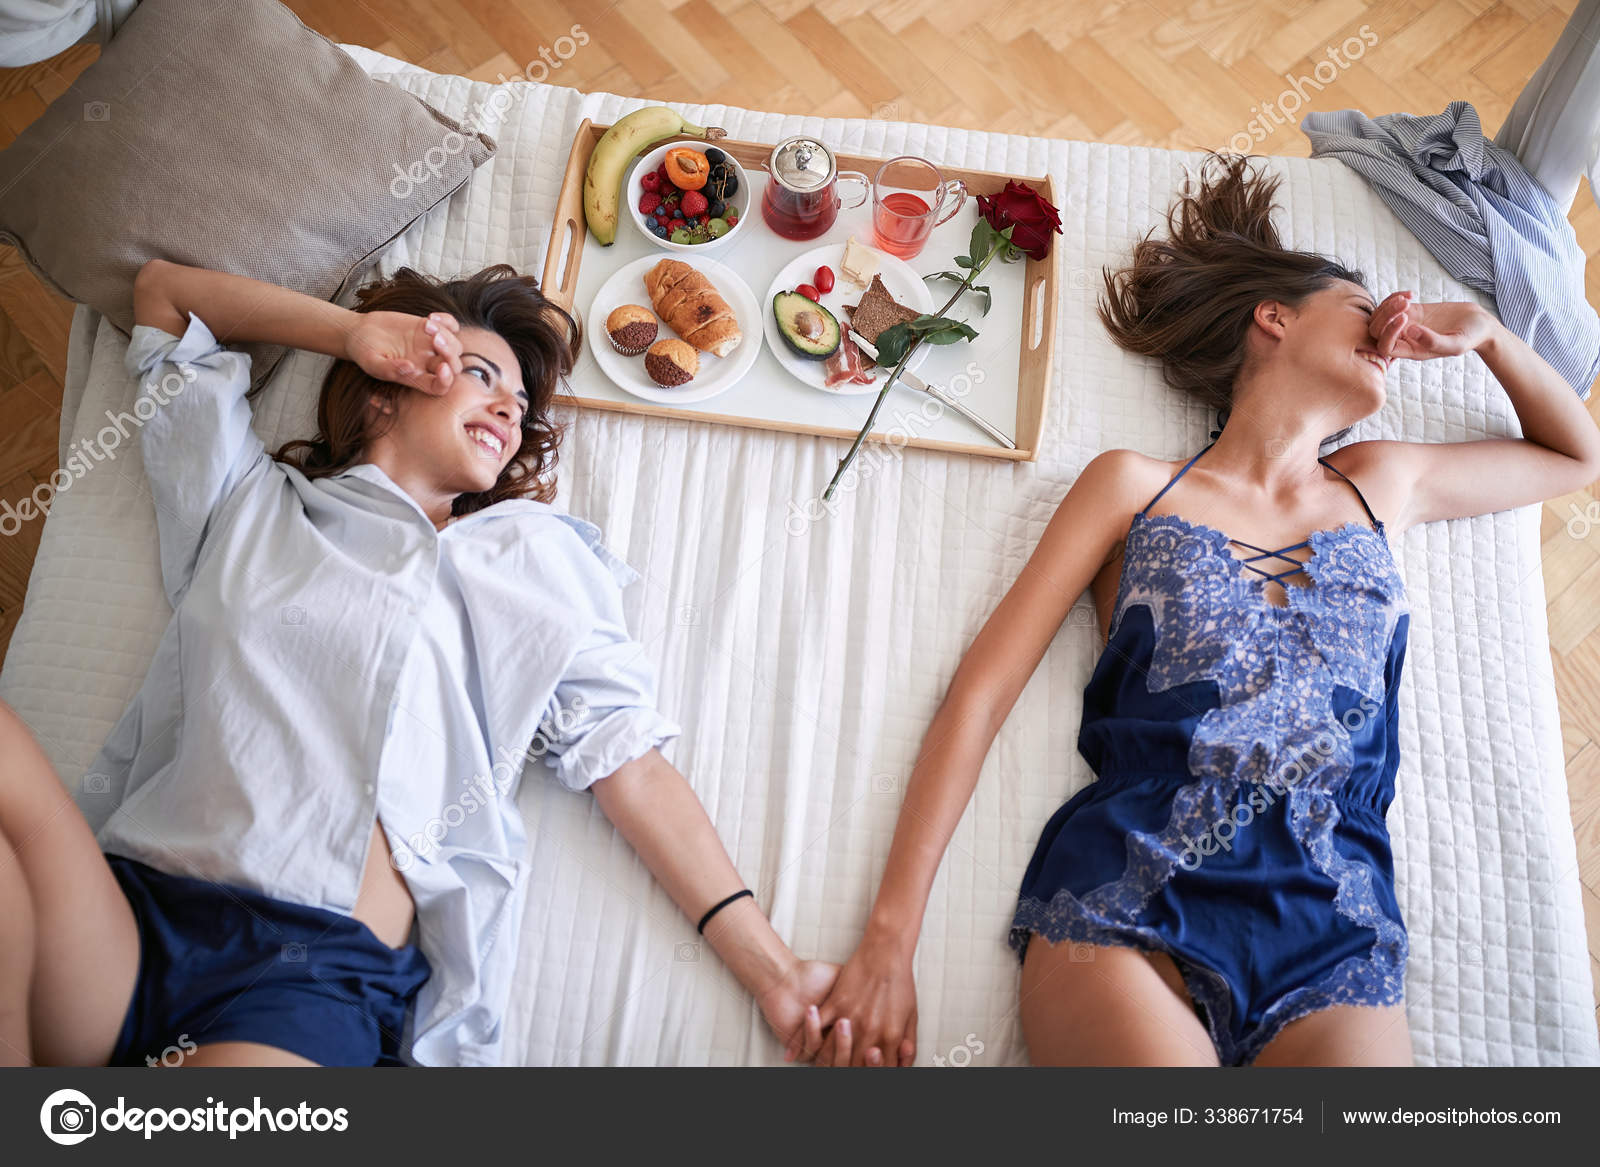 A gay couple in bed having sex Stockfotos, lizenzfreie A gay couple in bed having sex Bilder Depositphotos